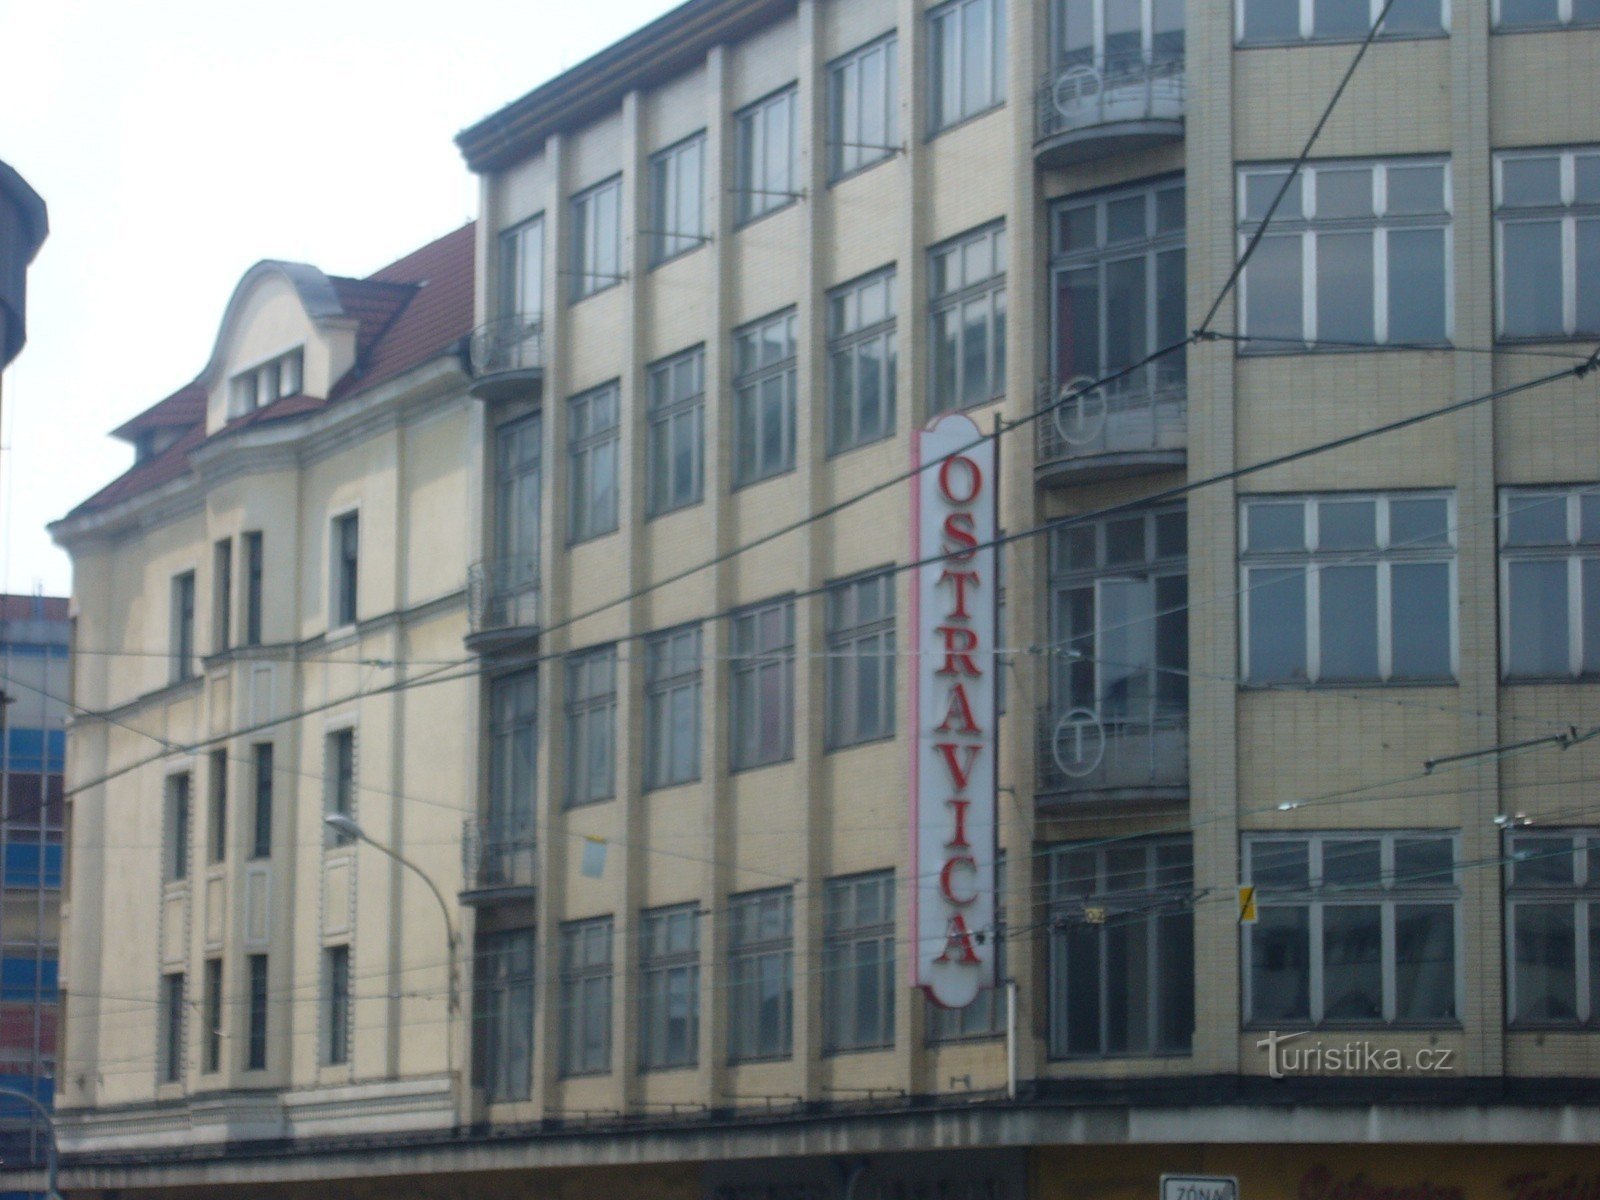 Ostrava - Commercio casa Textilia - Ostravica